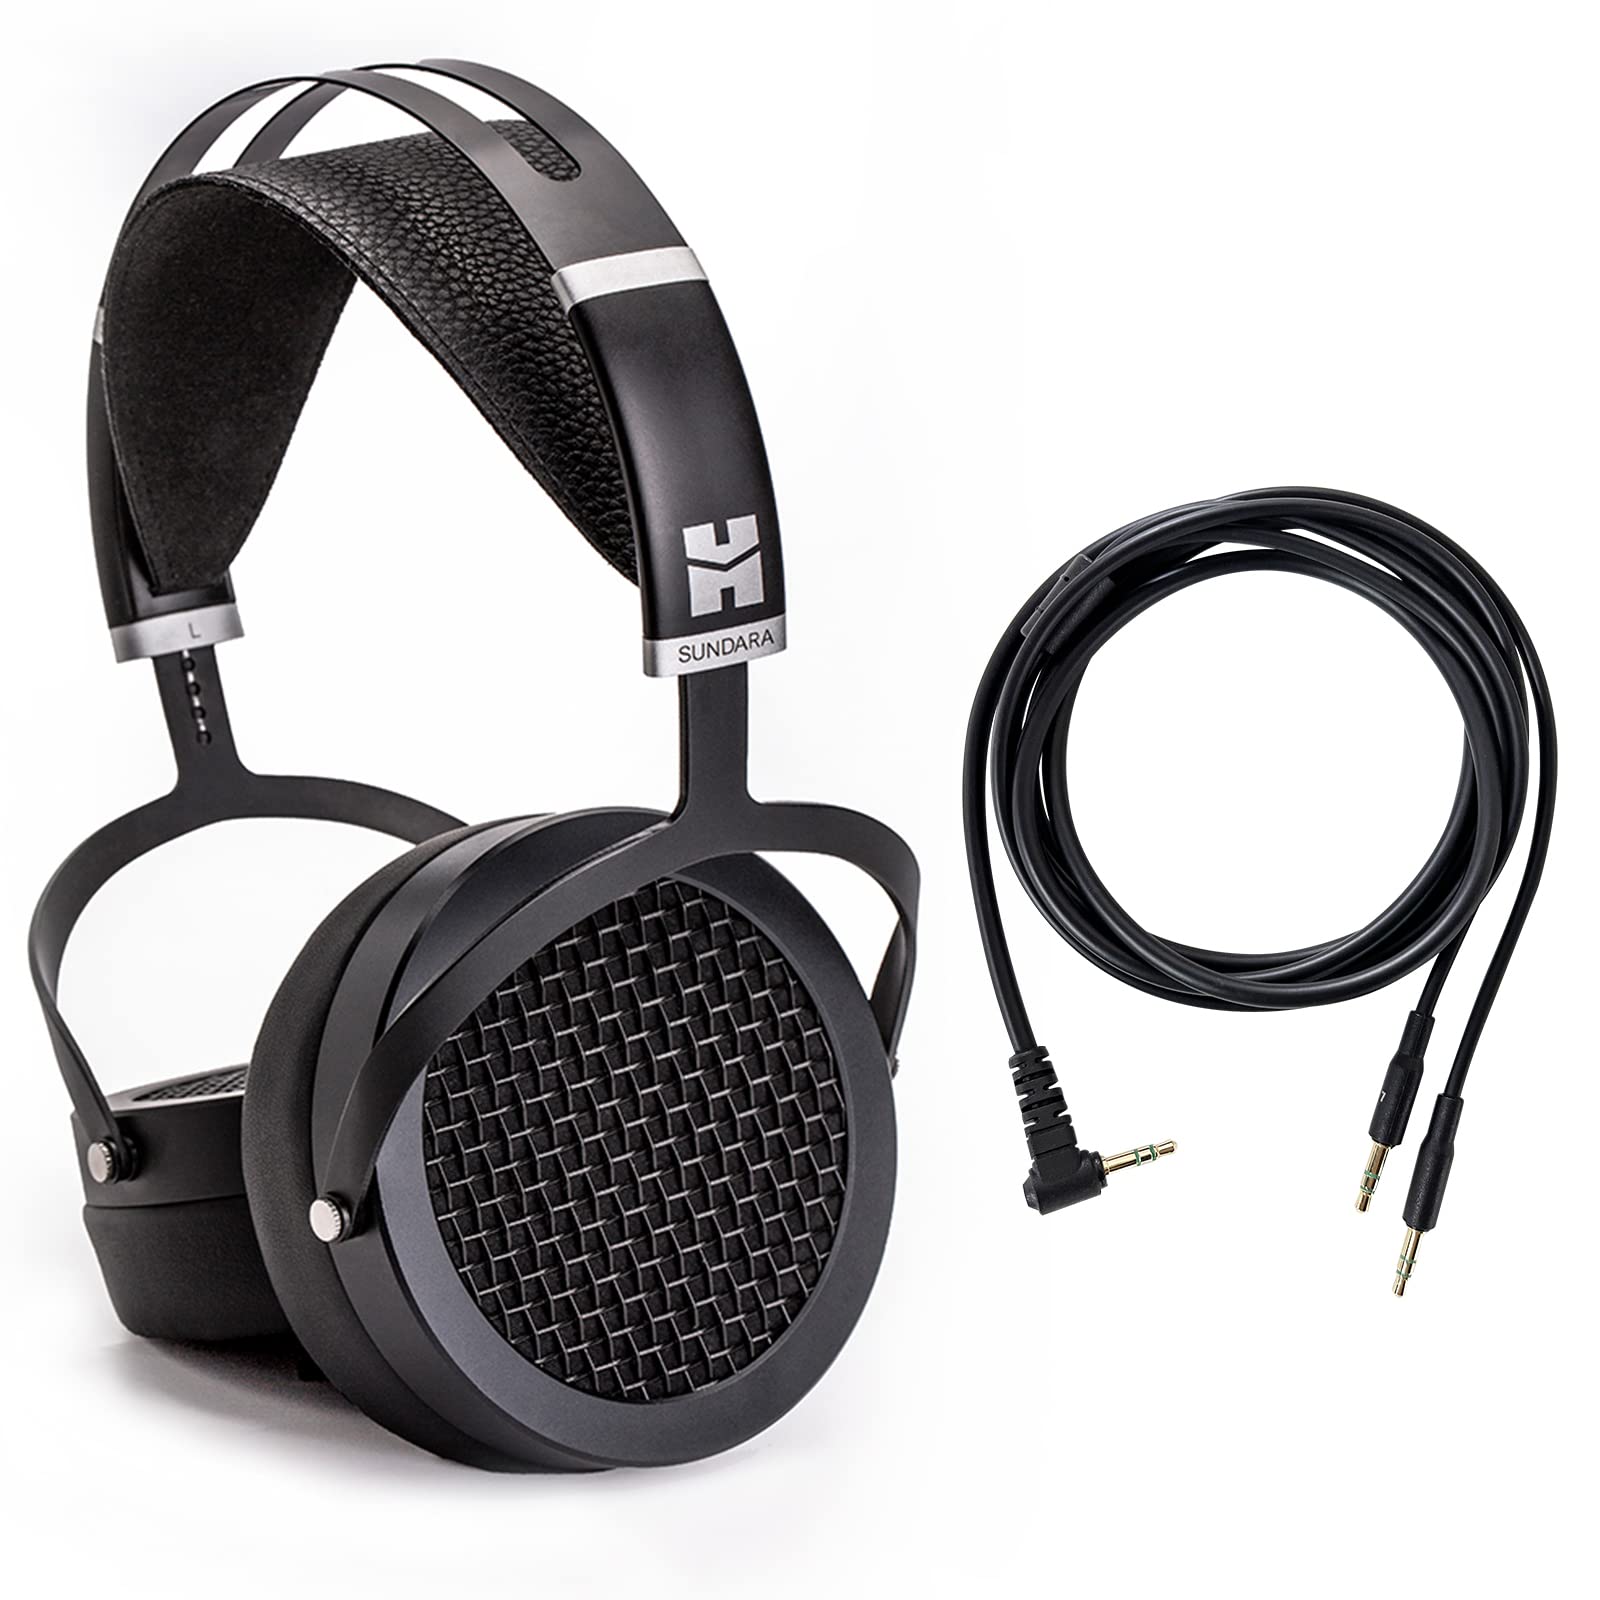 HIFIMAN SUNDARA 高保真耳机，带 3.5 毫米连接器，平面磁性，舒适贴合，带更新耳垫 - 黑色，2020 版